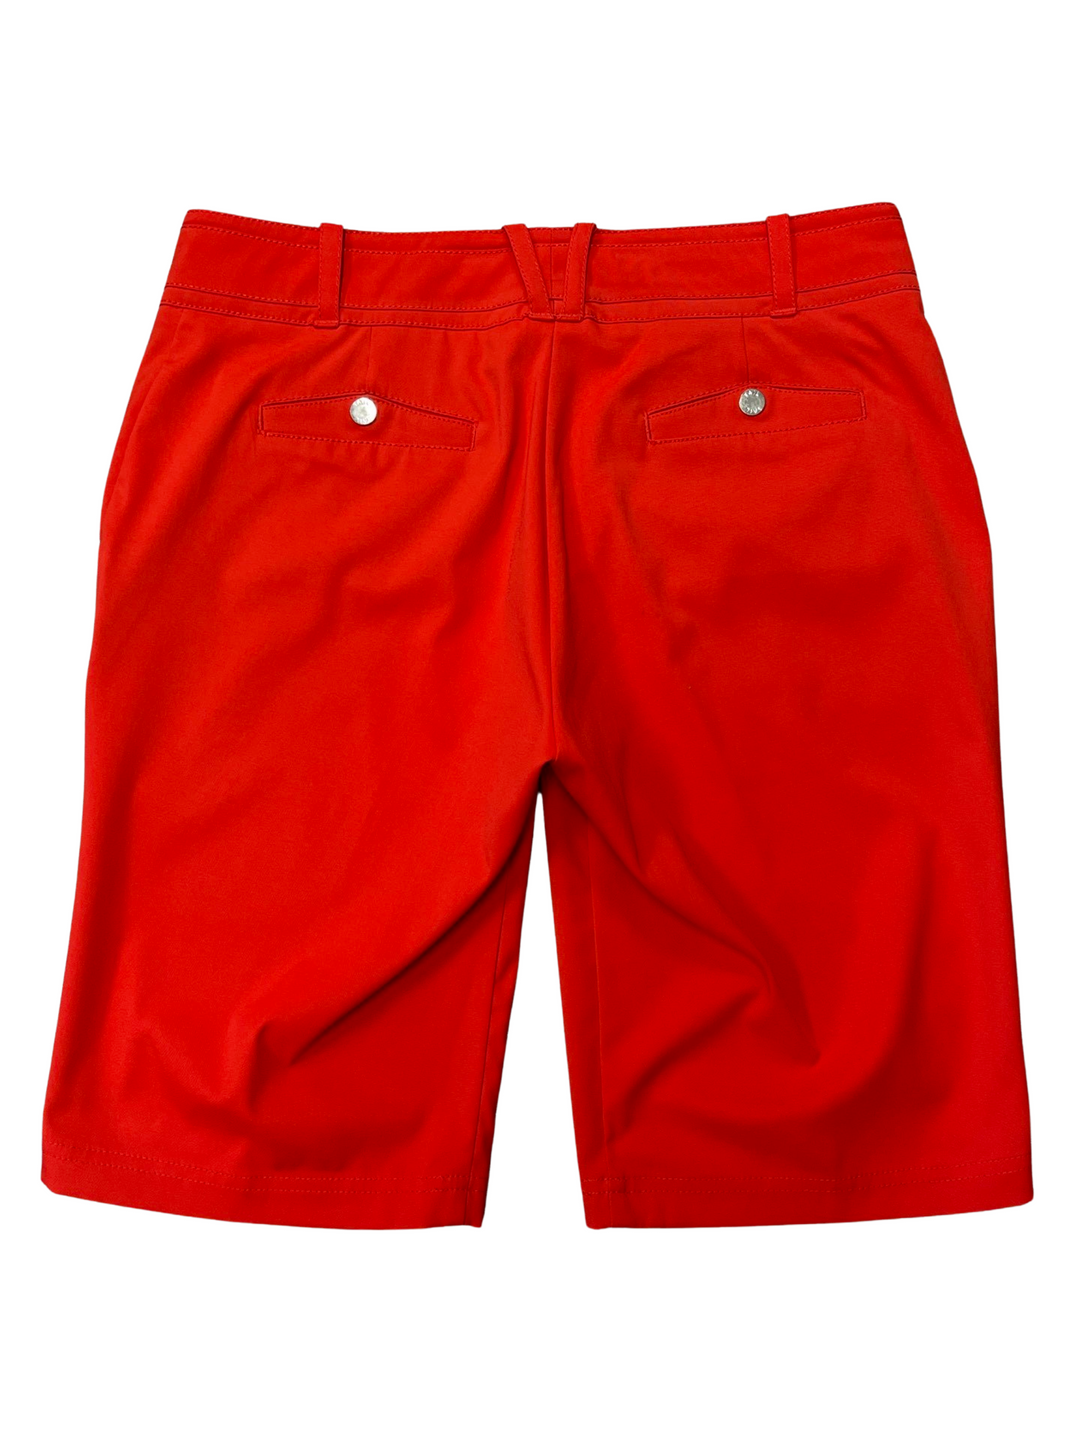 Tail 11" Red Golf Shorts- Size 4 - Skorzie